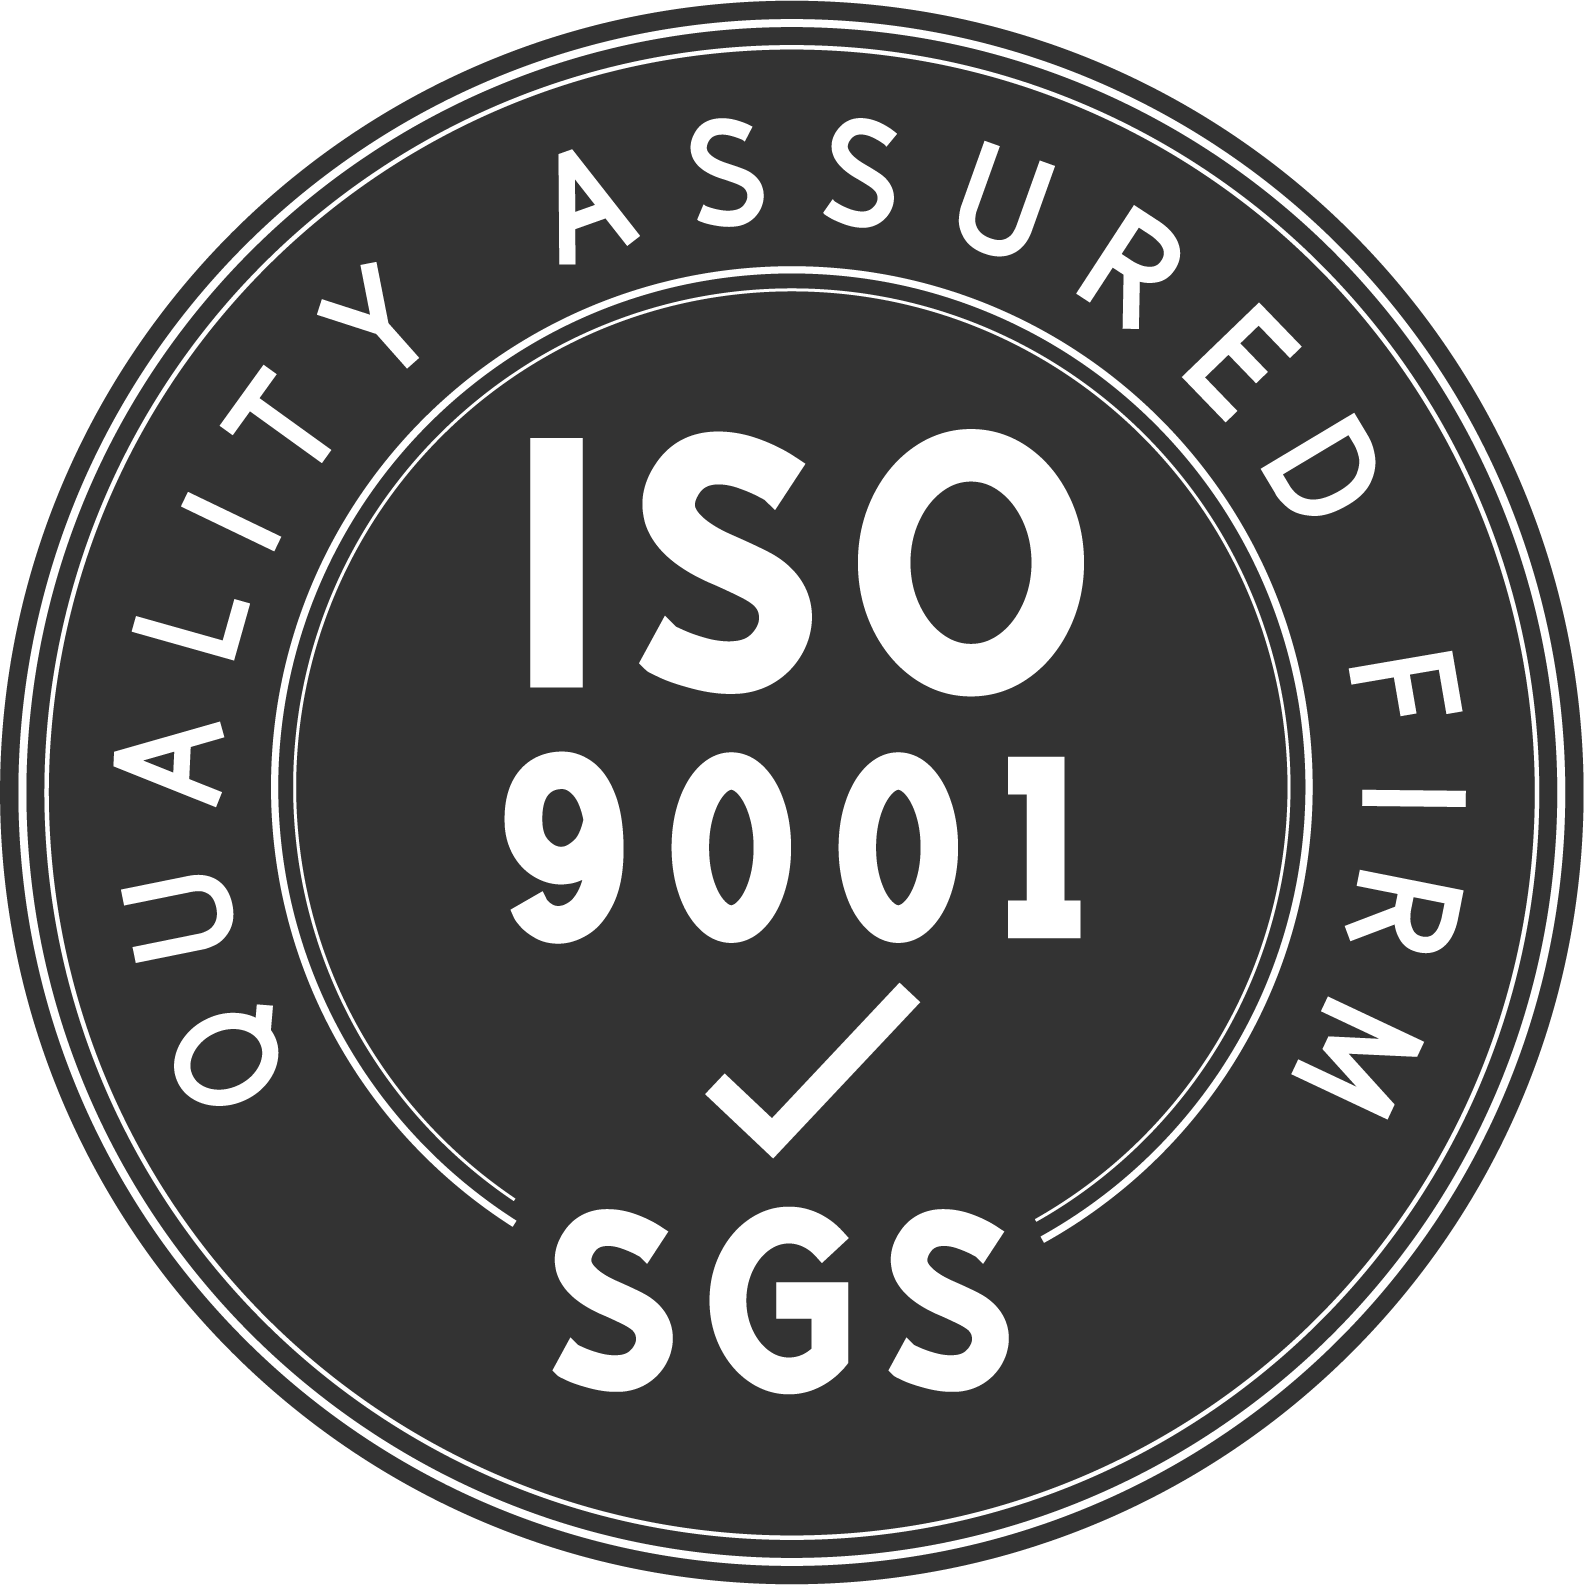 Nhà máy của chúng tôi là nhà sản xuất được chứng nhận ISO9001: 2005 về các sản phẩm chất lượng cao